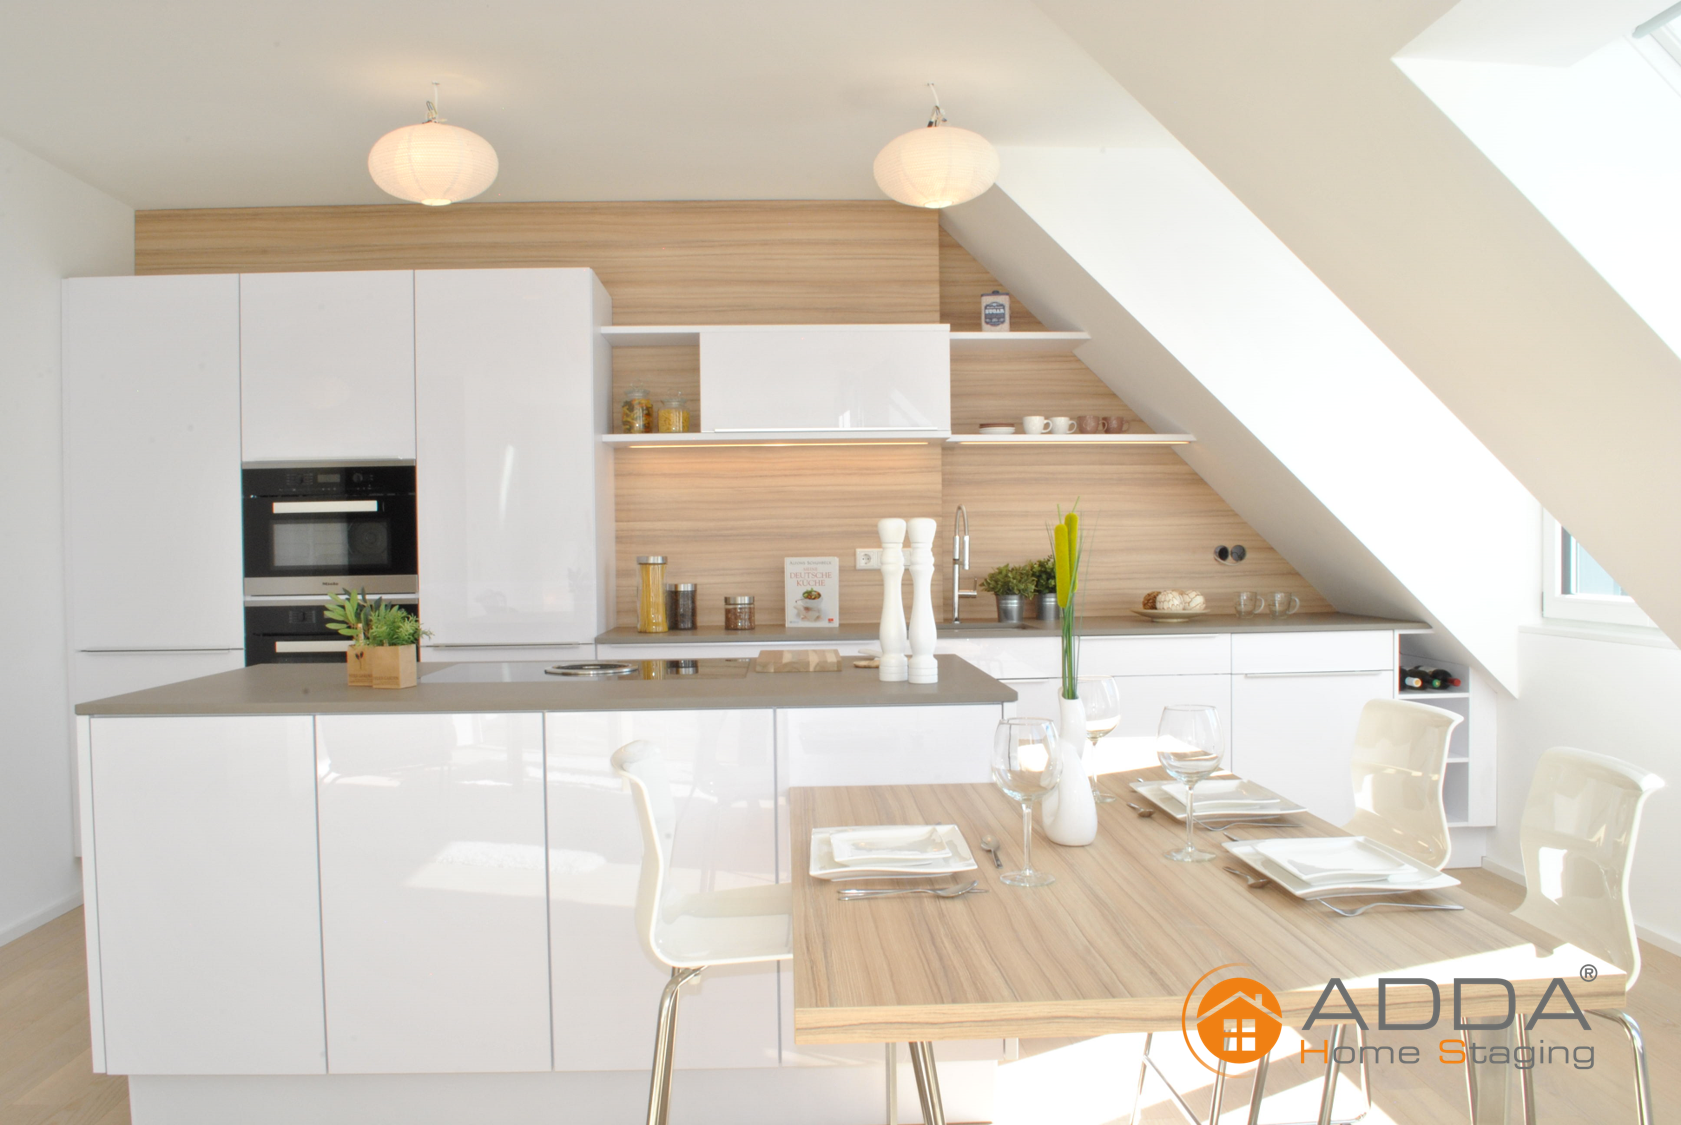 Küche nach ADDA Homestaging #küche #raumgestaltung ©ADDA Homestaging